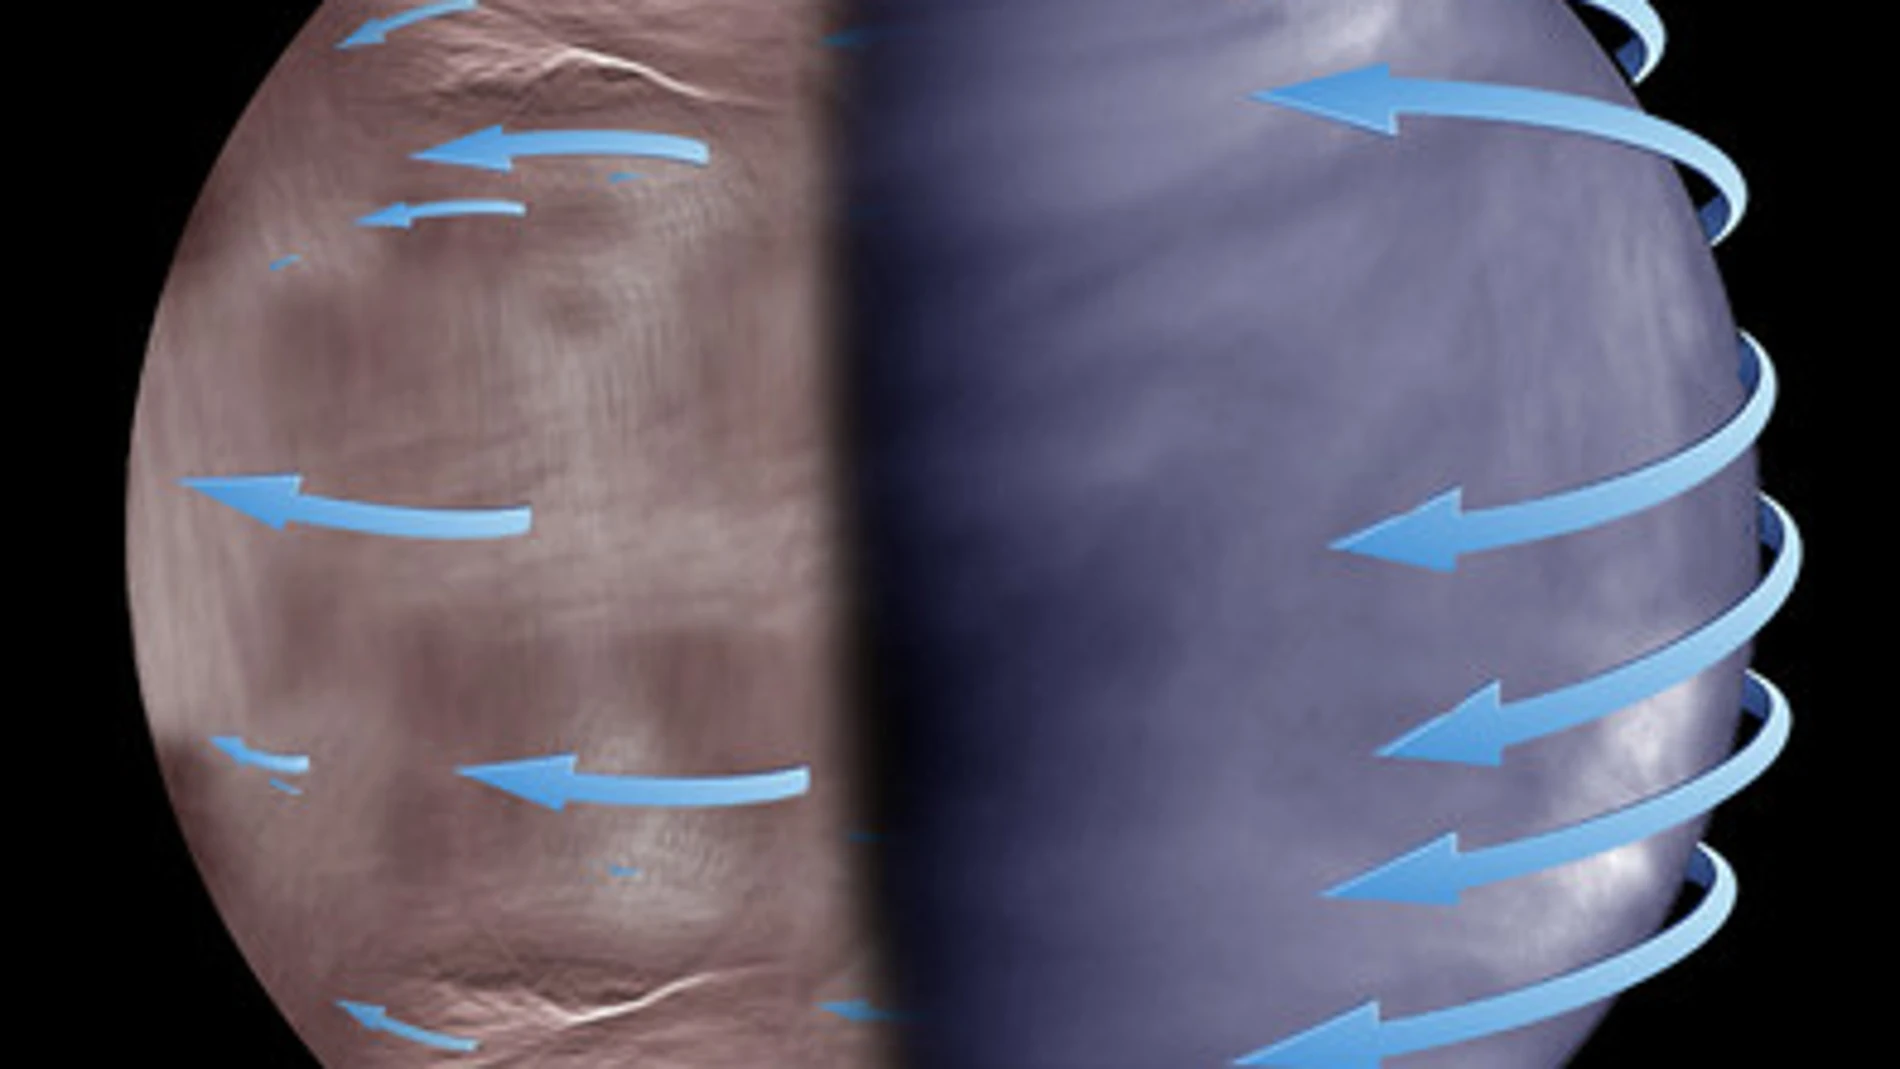 Esquema de la superrotación atmosférica de Venus en las nubes superiores. Mientras que la superrotación es más uniforme en el lado diurno de Venus (imagen tomada por la nave Akatsuki, derecha), en la noche esta se vuelve más caótica e impredecible (imagen tomada por Venus Express, izquierda)